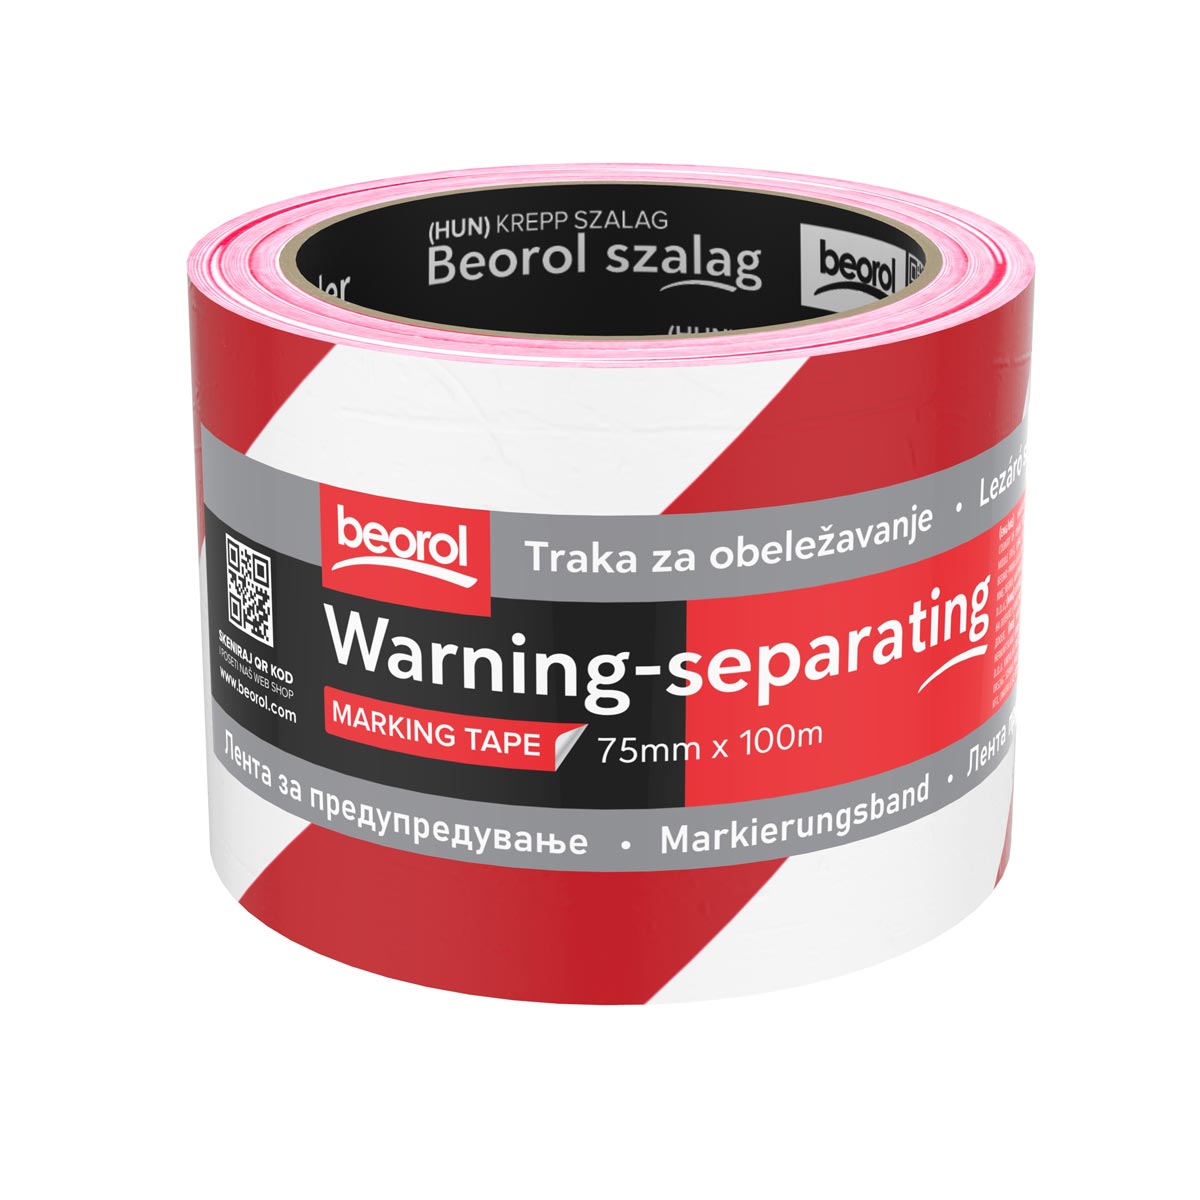 Warning-separating tape red/white 75mm x 100m | Beorol